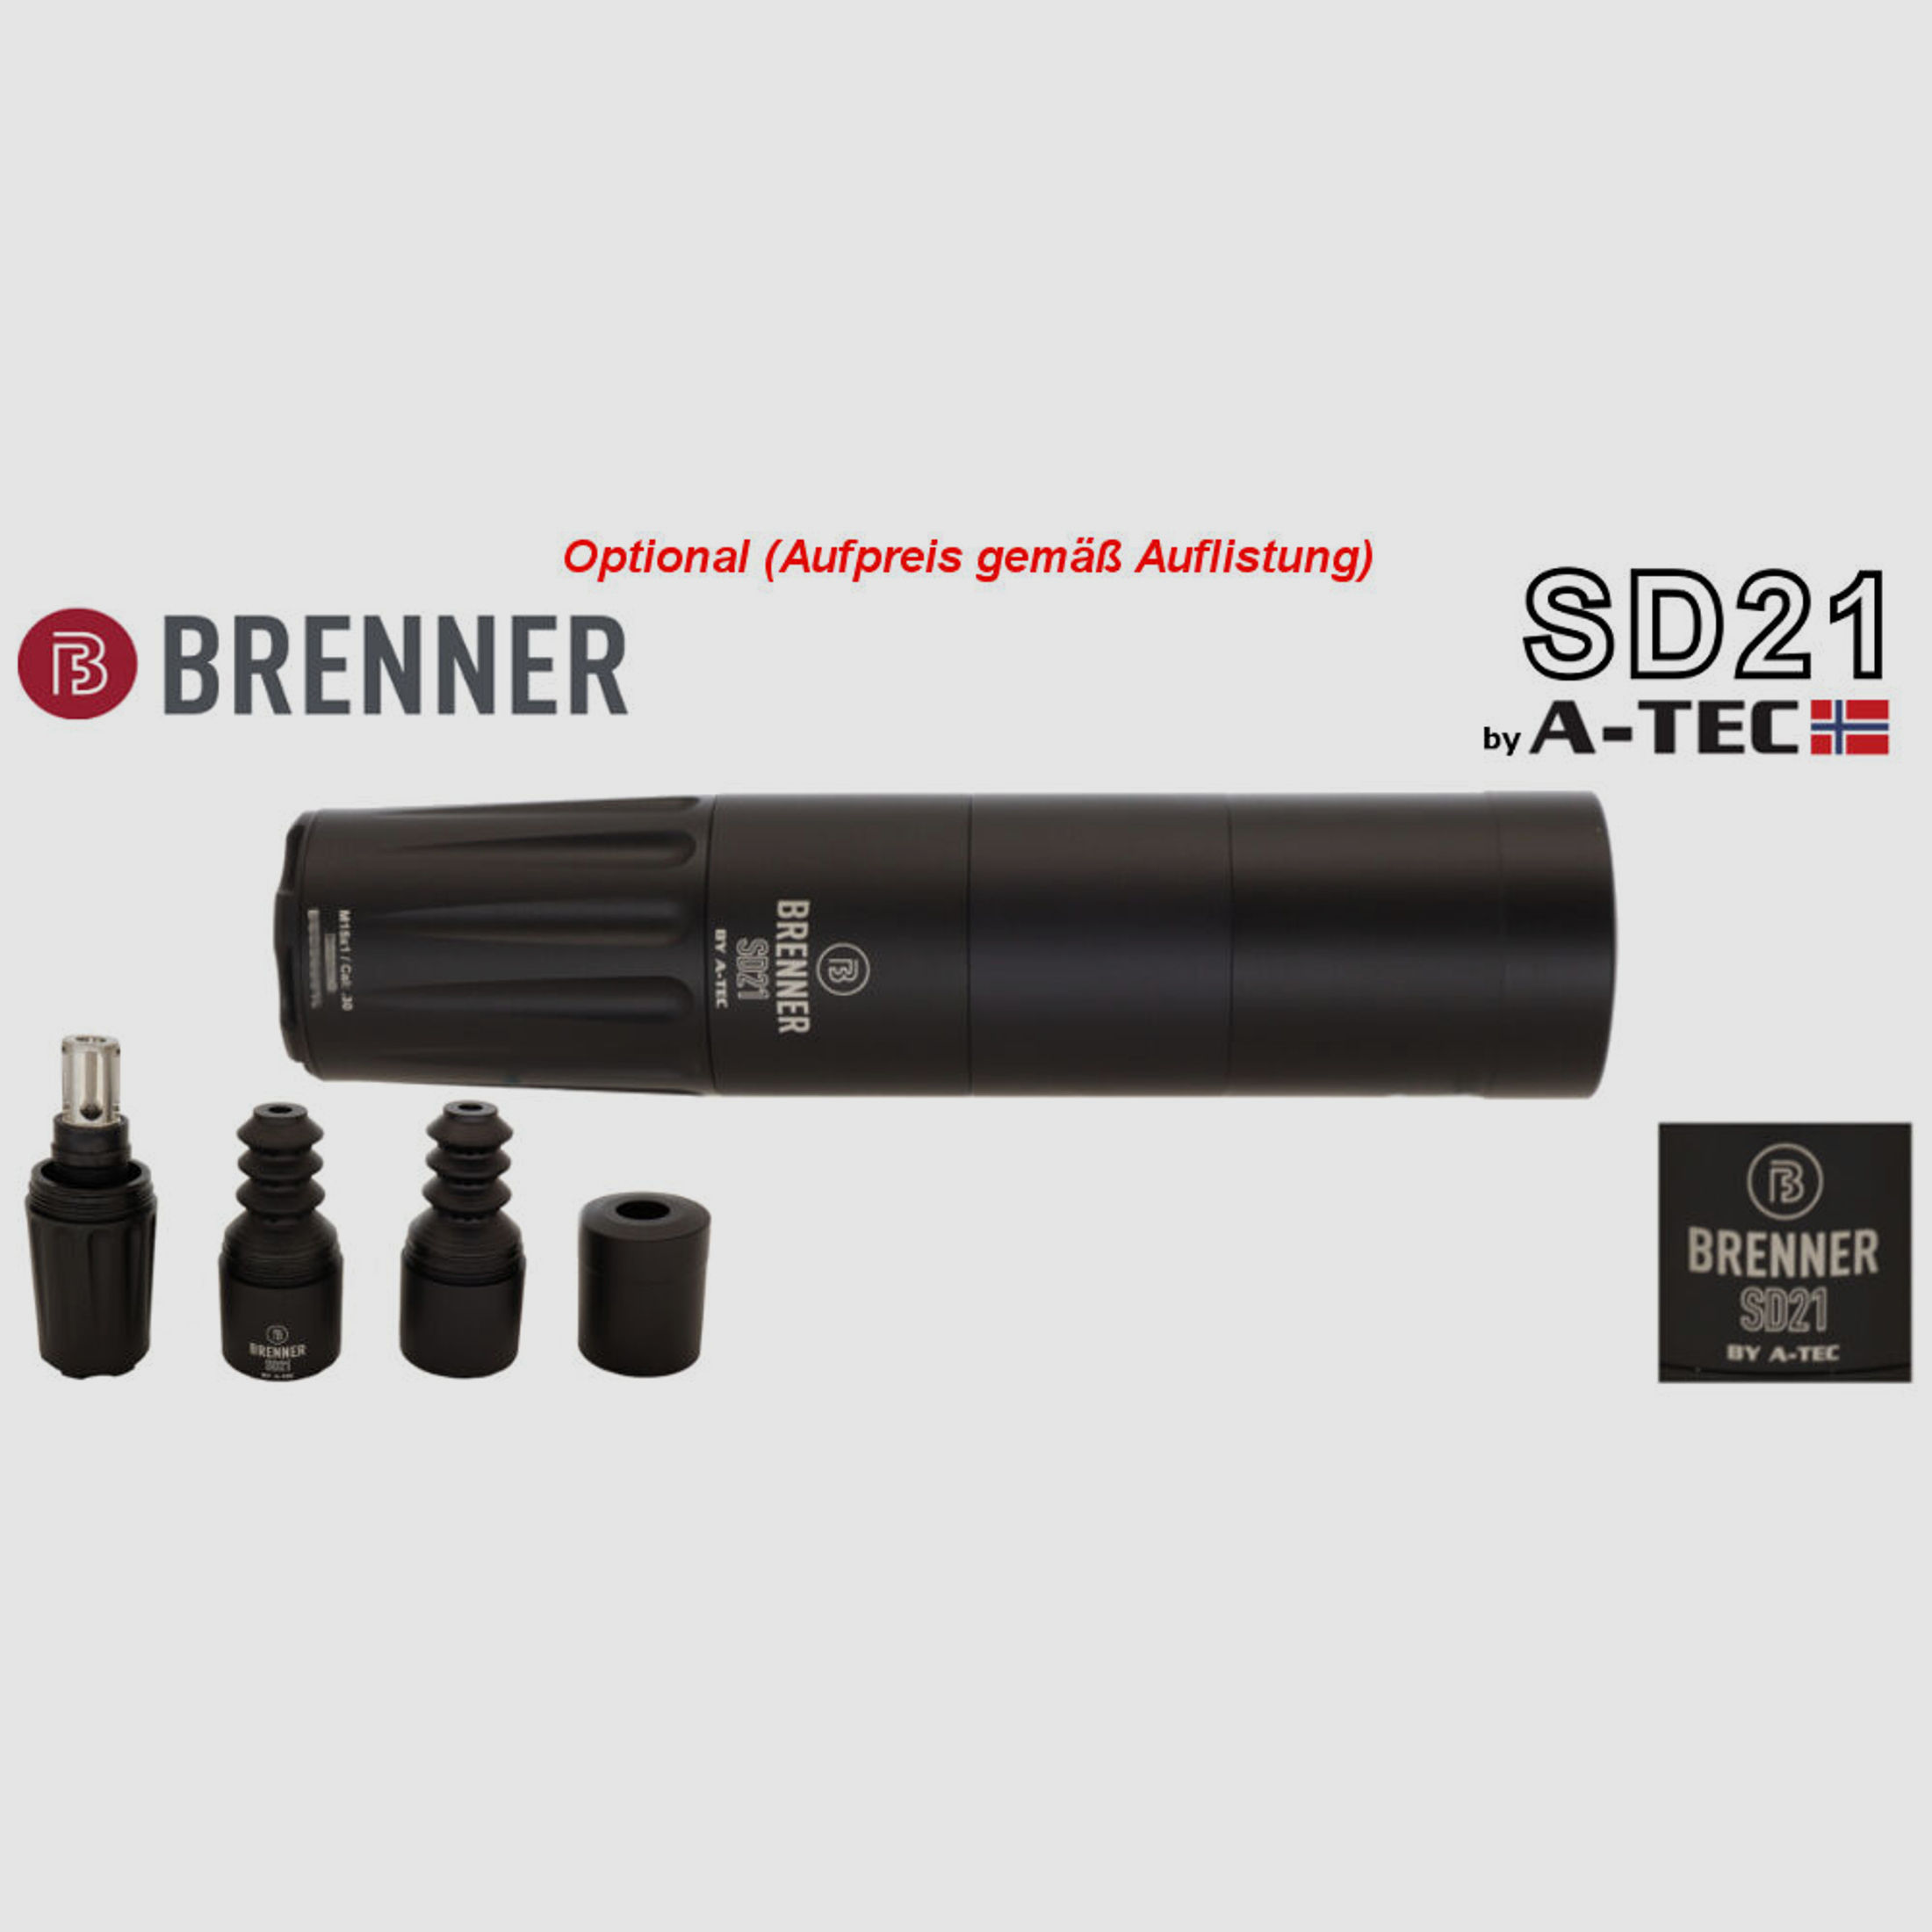 Brenner Komplettpaket:	 Brenner BR20 Nussbaum mit Zeiss V6 2.5-15x56